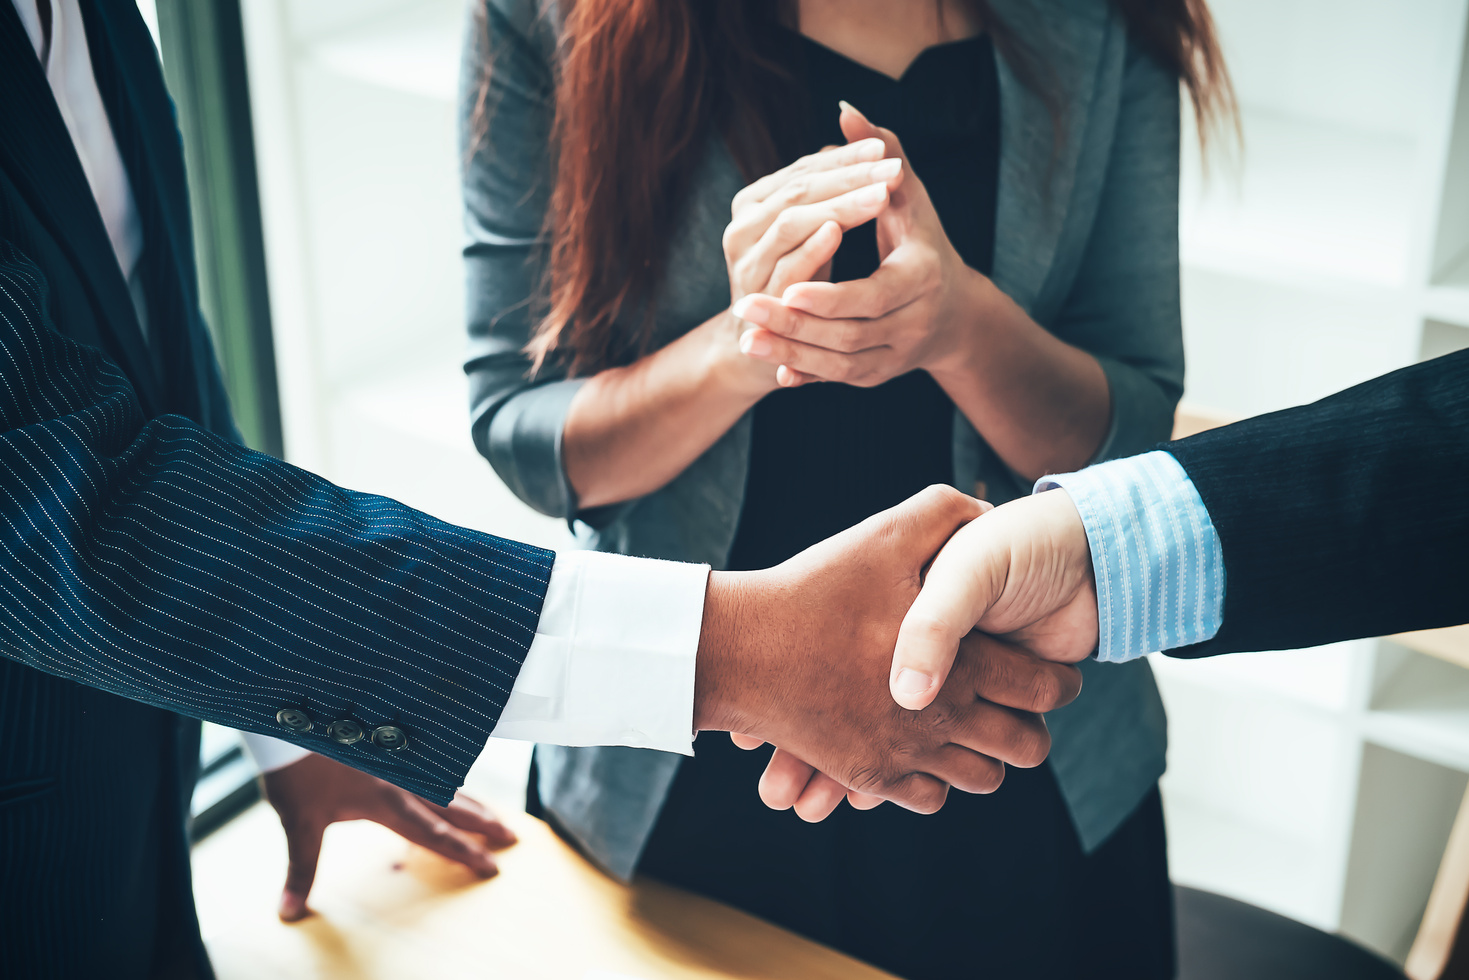 Handshake Between Business People in an Office